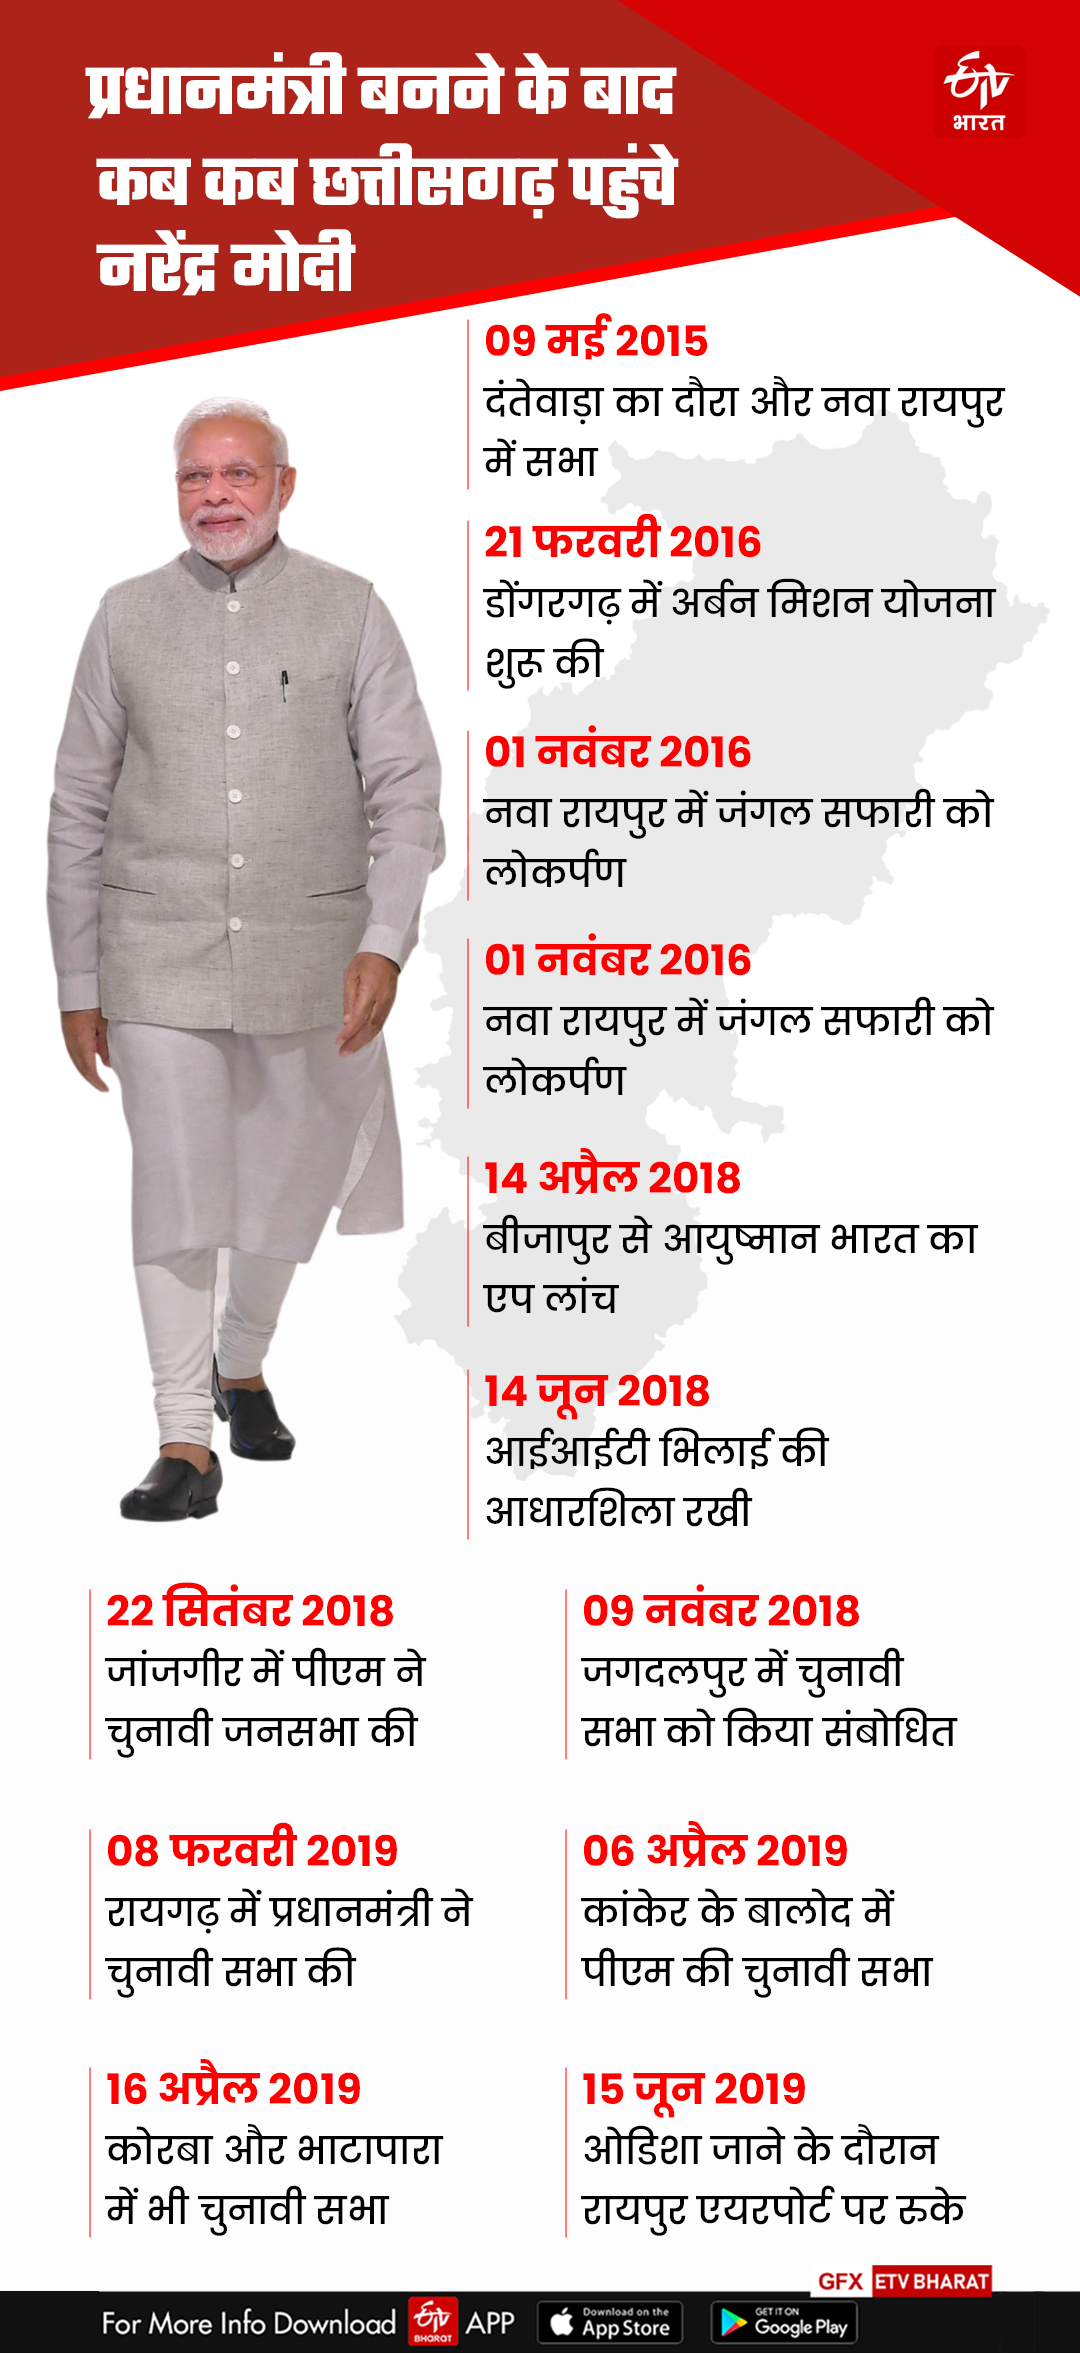 PM Modi Visits Chhattisgarh